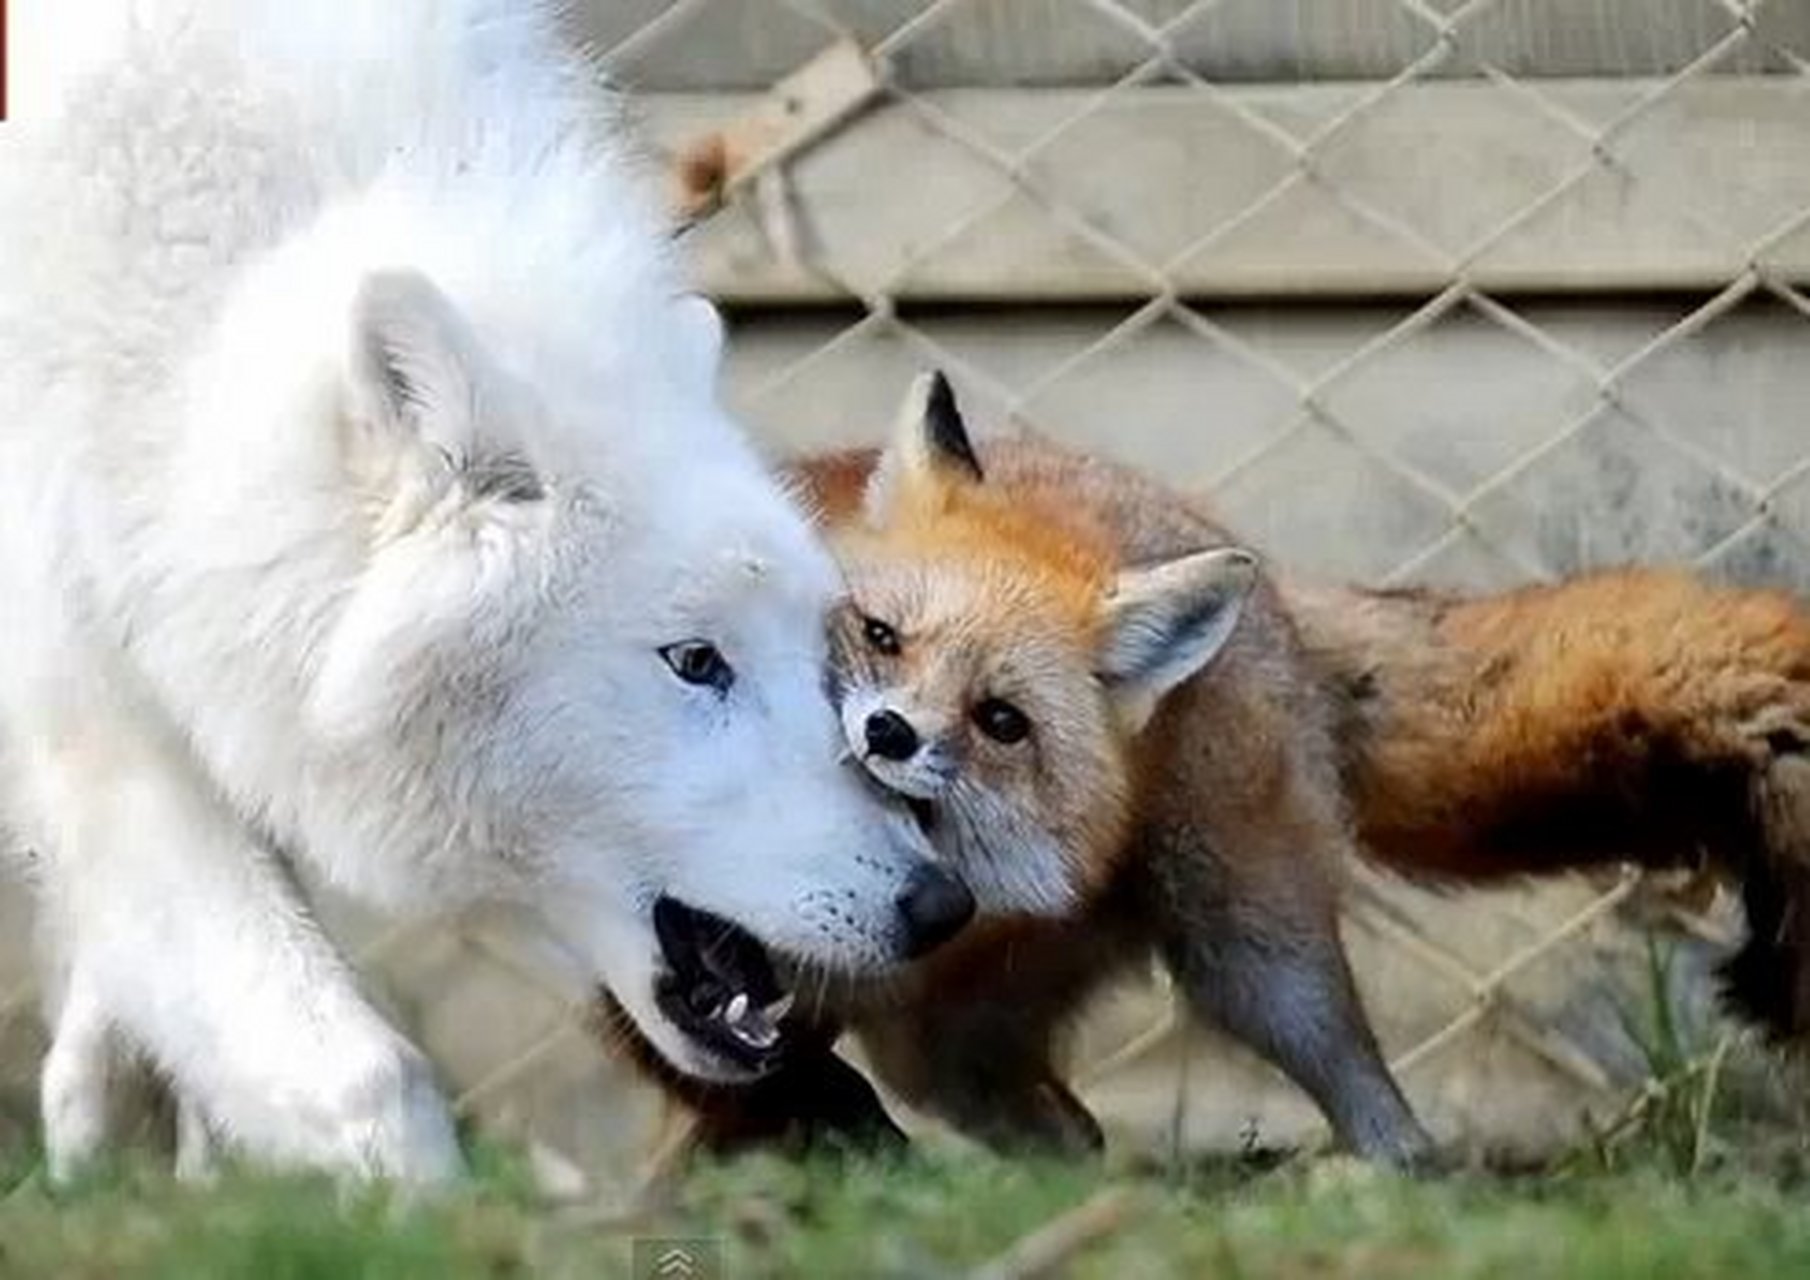 狼与狐的不寻常友谊 虽然同属犬科,但在野外,狼与狐狸其实往往是敌人